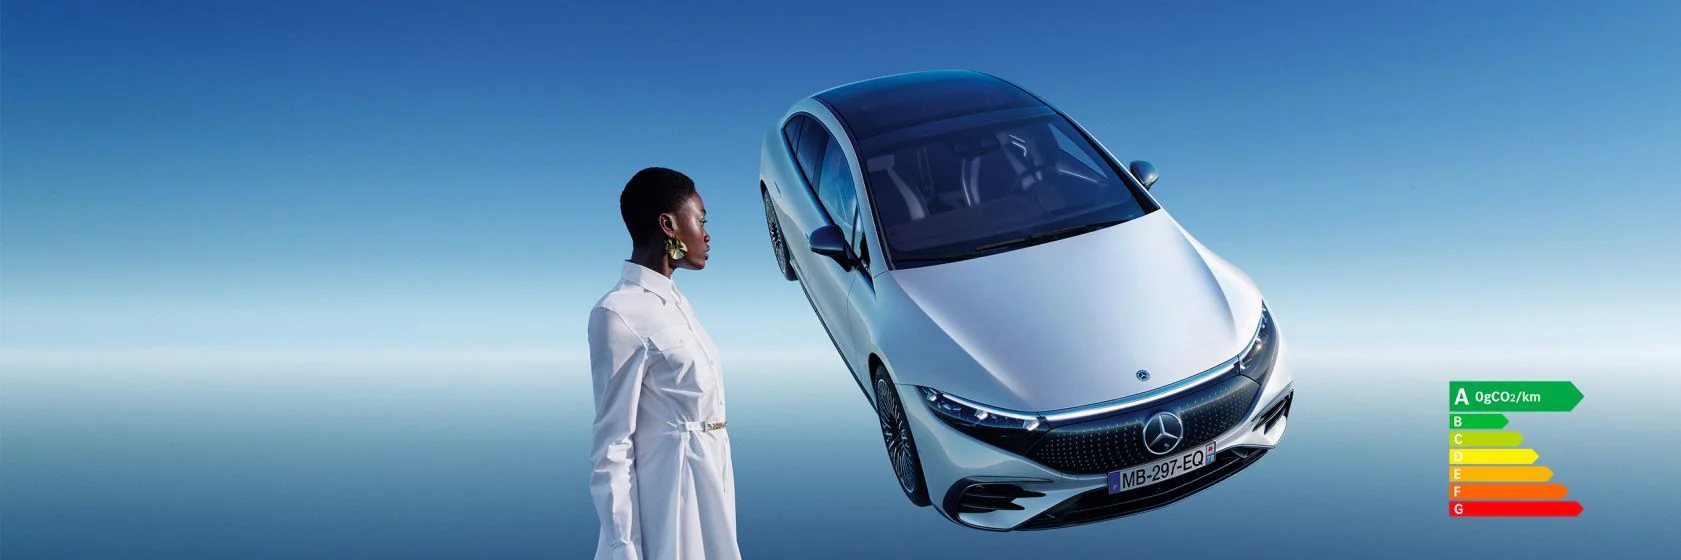 Entrez dans une nouvelle ère avec l’EQS, la berline luxe 100% électrique par Mercedes-Benz.